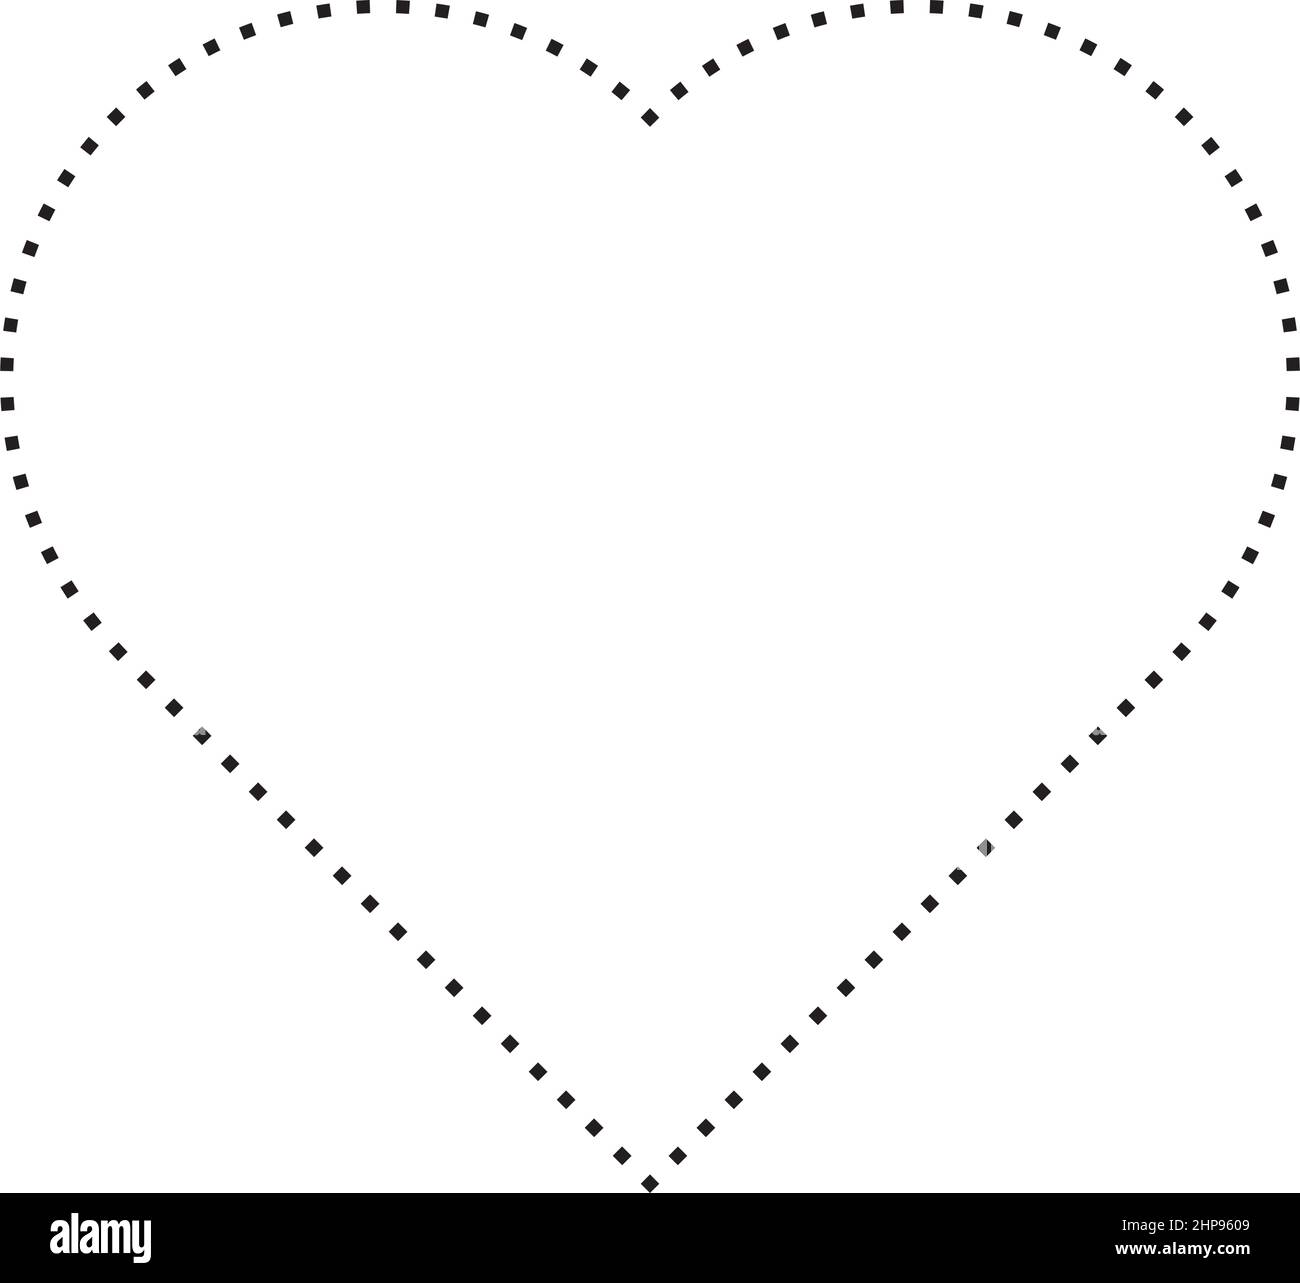 Herz Form gepunktete Symbol Symbol Vektor für kreative Grafik-Design-ui-Element in einem Piktogramm Illustration Stock Vektor